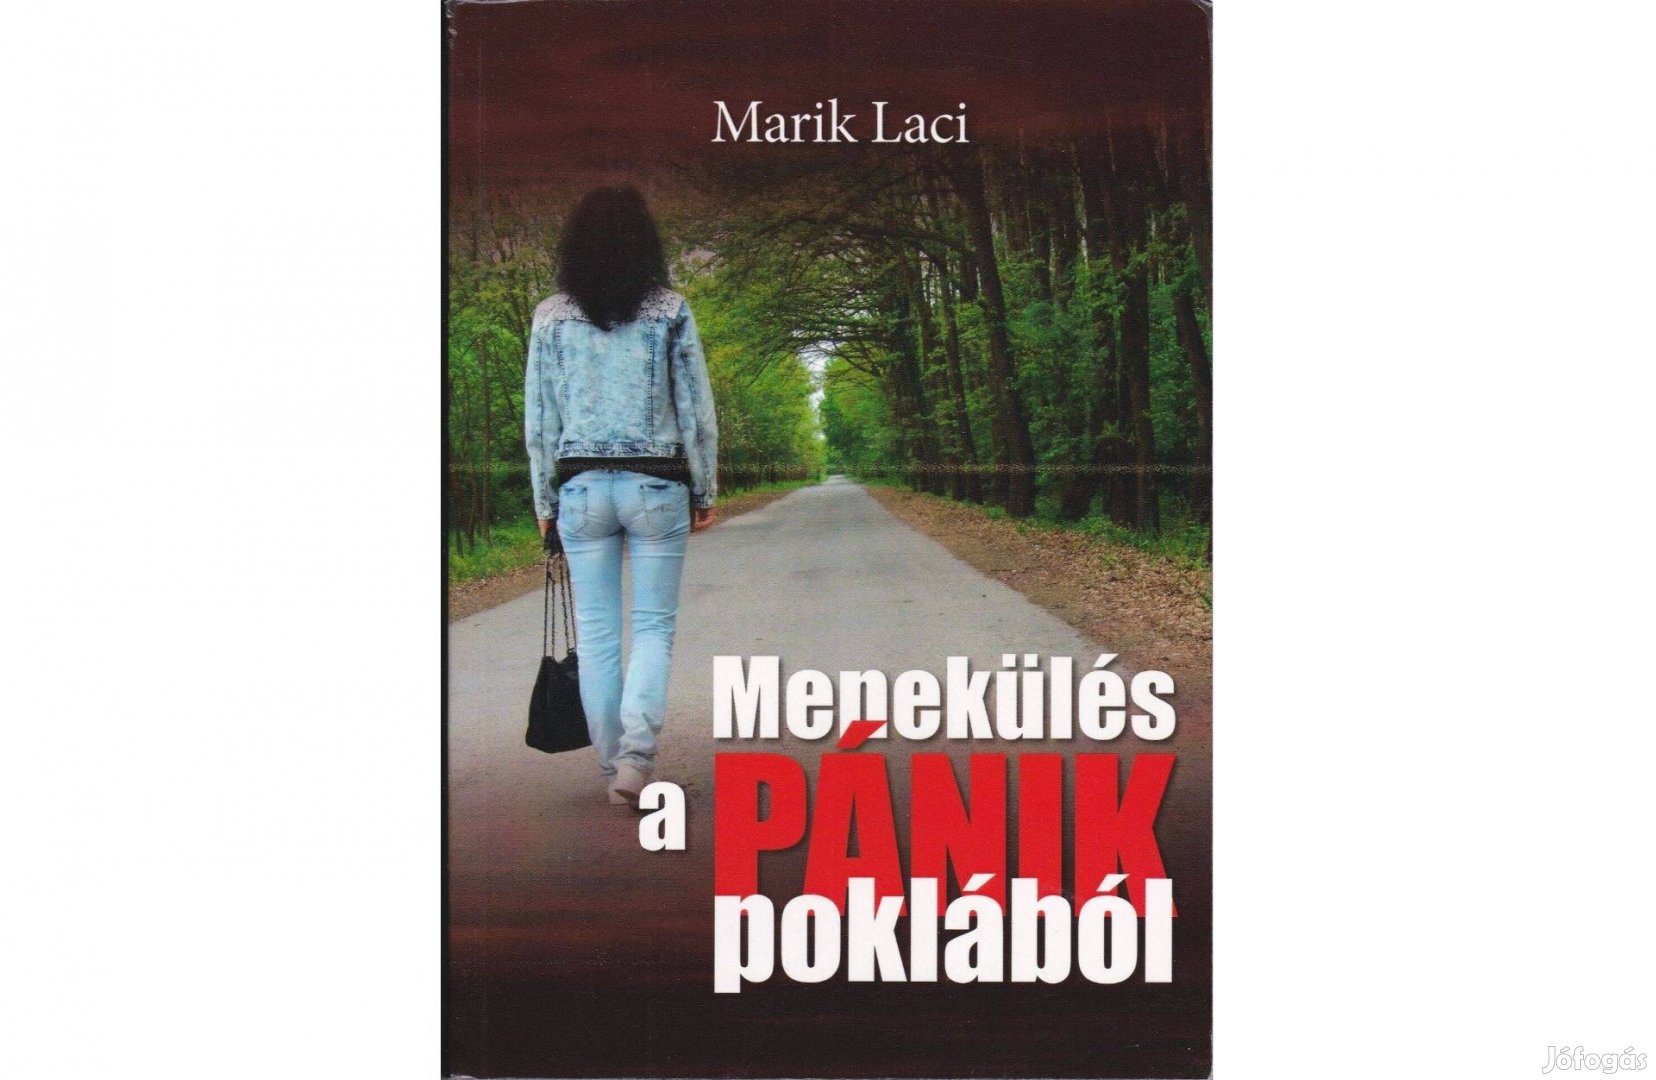 Marik Laci: Menekülés a pánik poklából